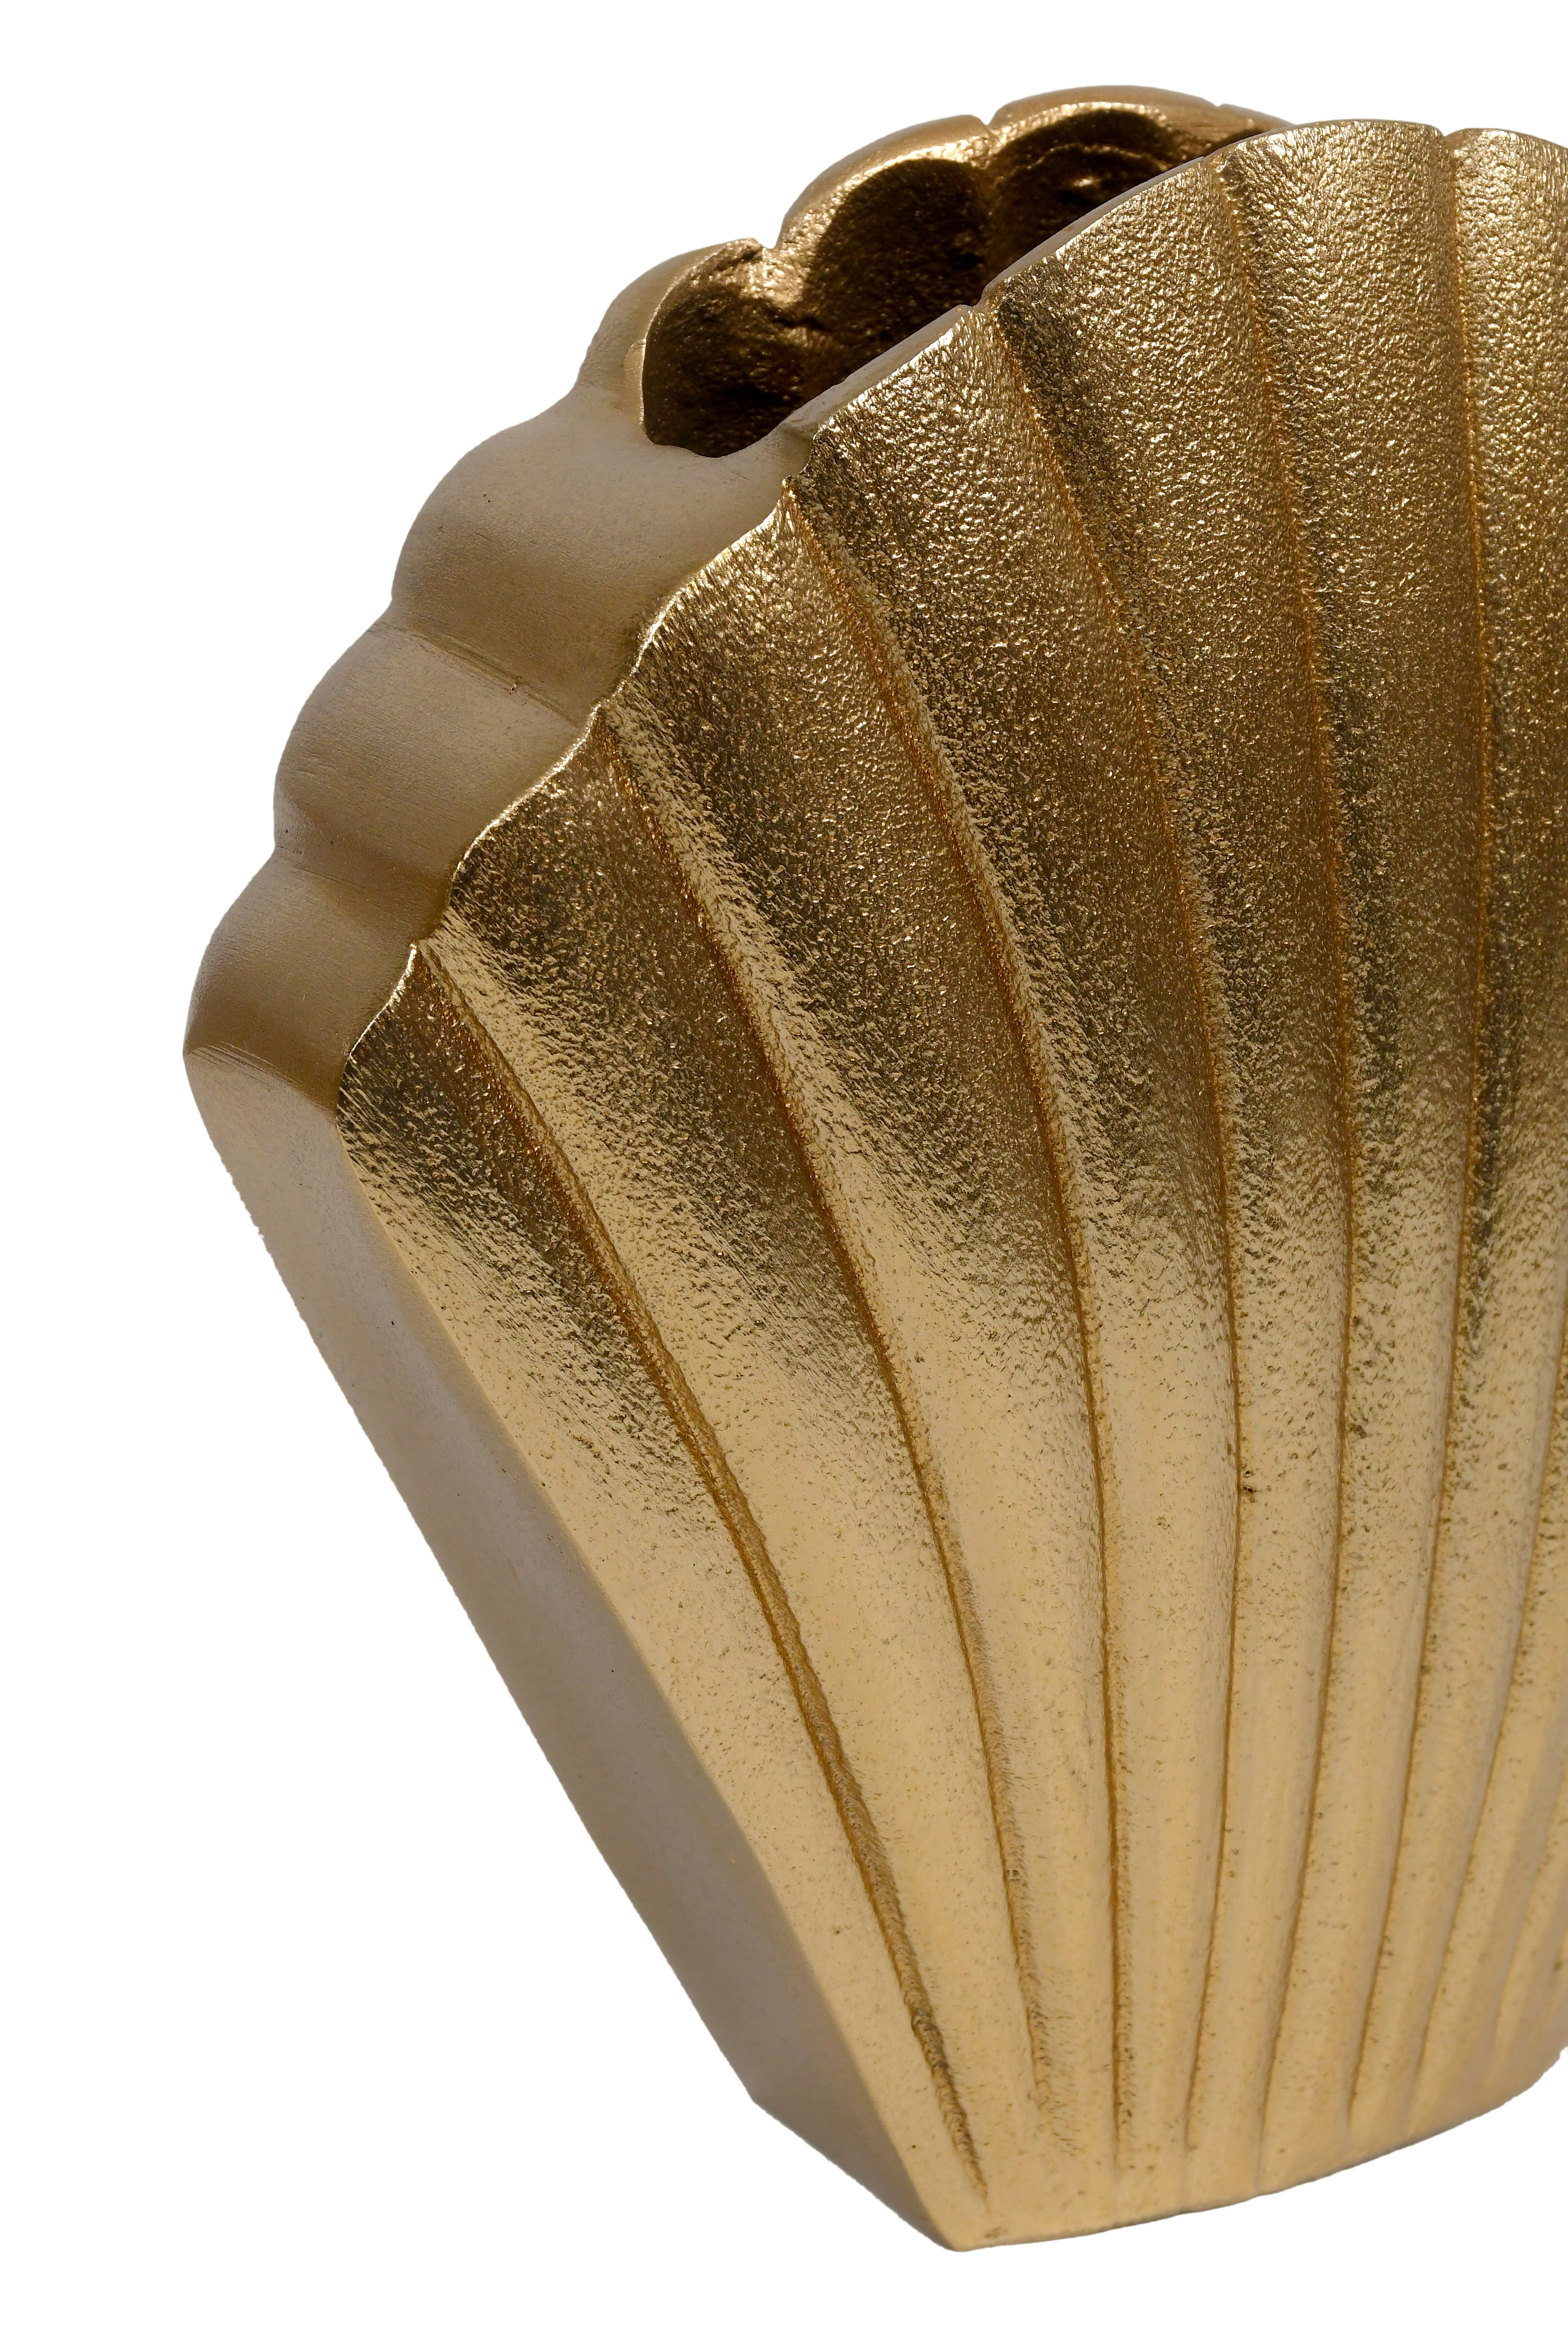 Oceanic Gold Flower Vase - Medium